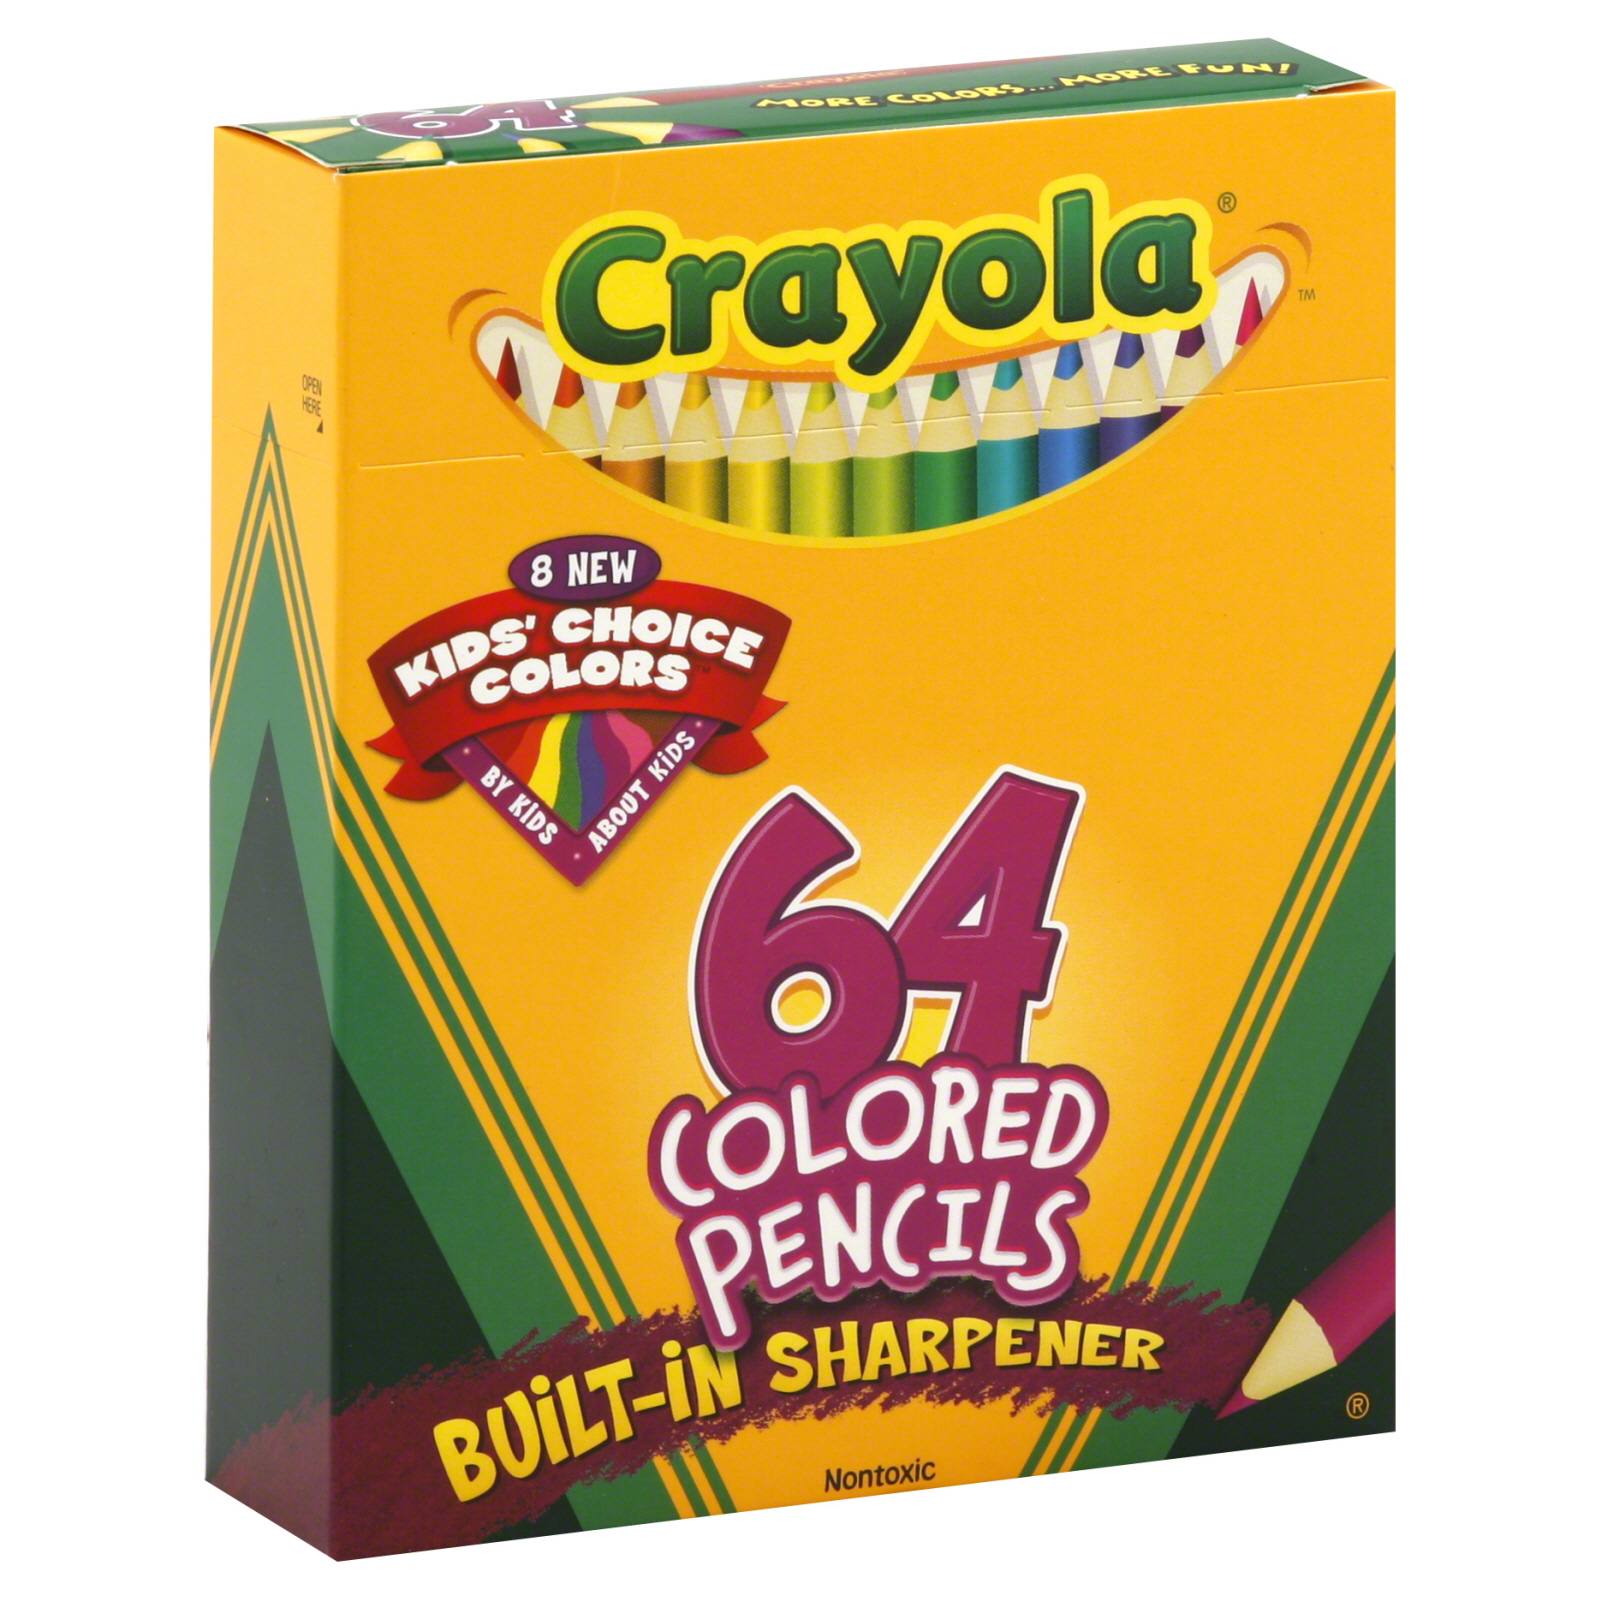 Crayola Colored Pencils, 64 colored pencils